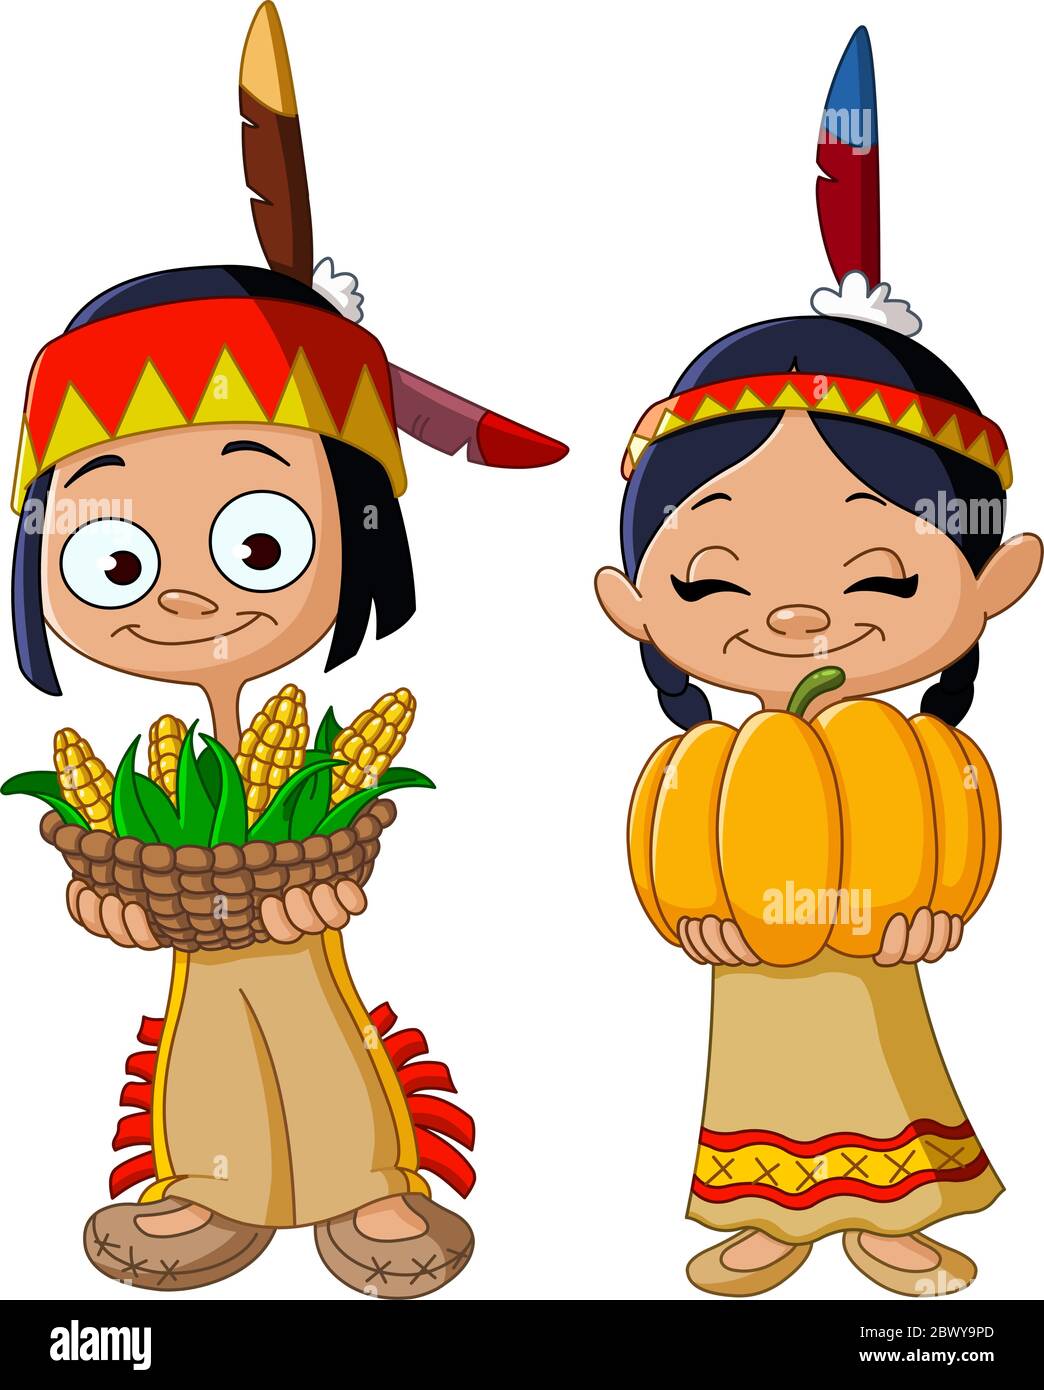 Les enfants indiens américains partagent la nourriture pour Thanksgiving Illustration de Vecteur